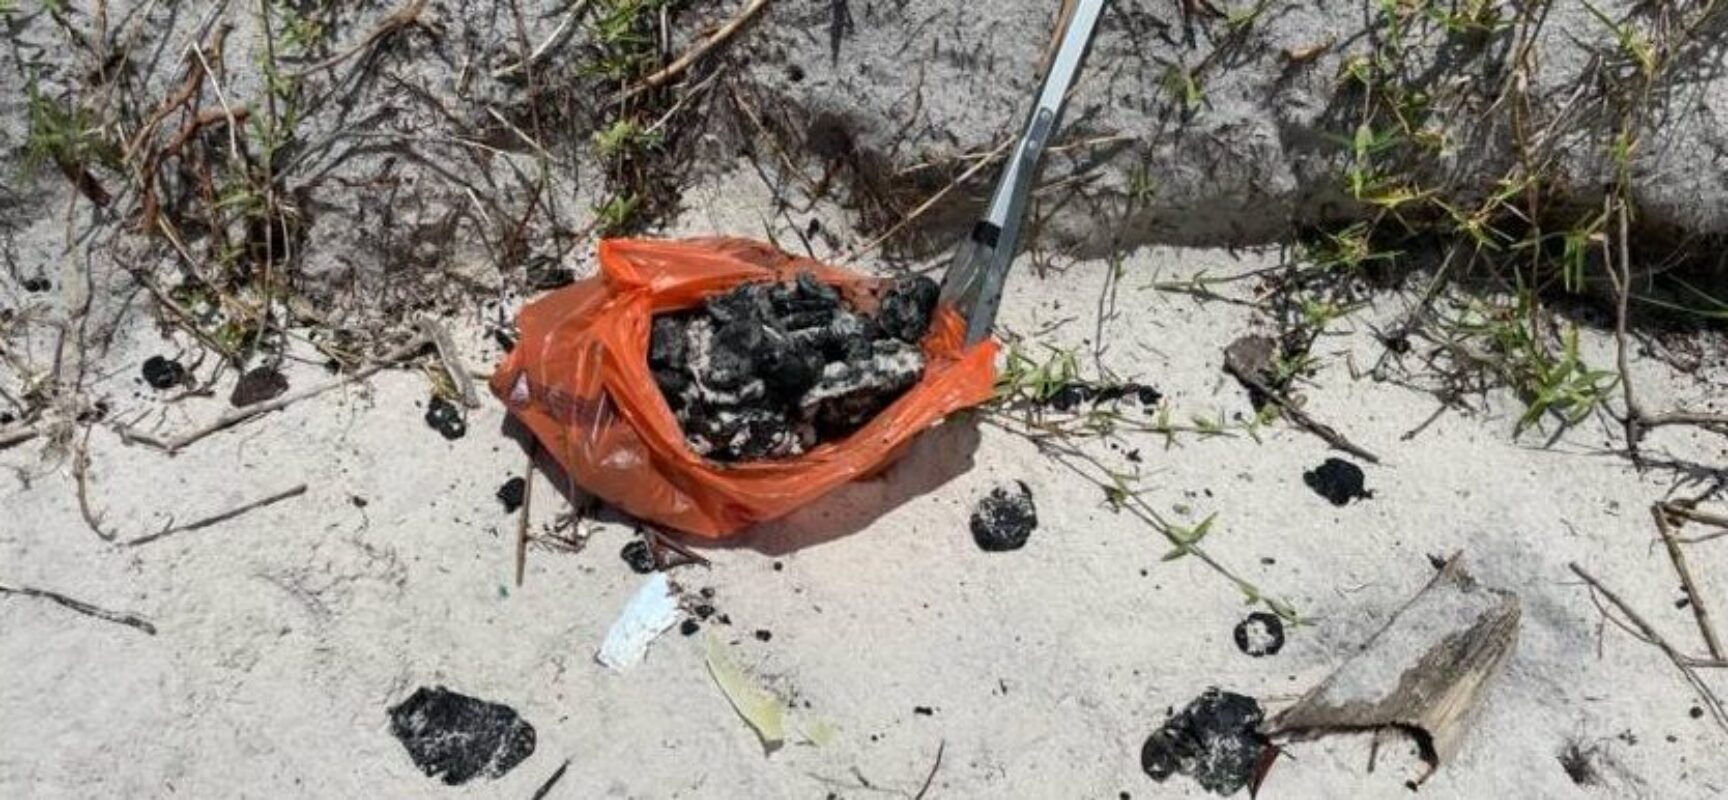 192 km de praias no Sul da Bahia são impactas pelo óleo, diz relatório